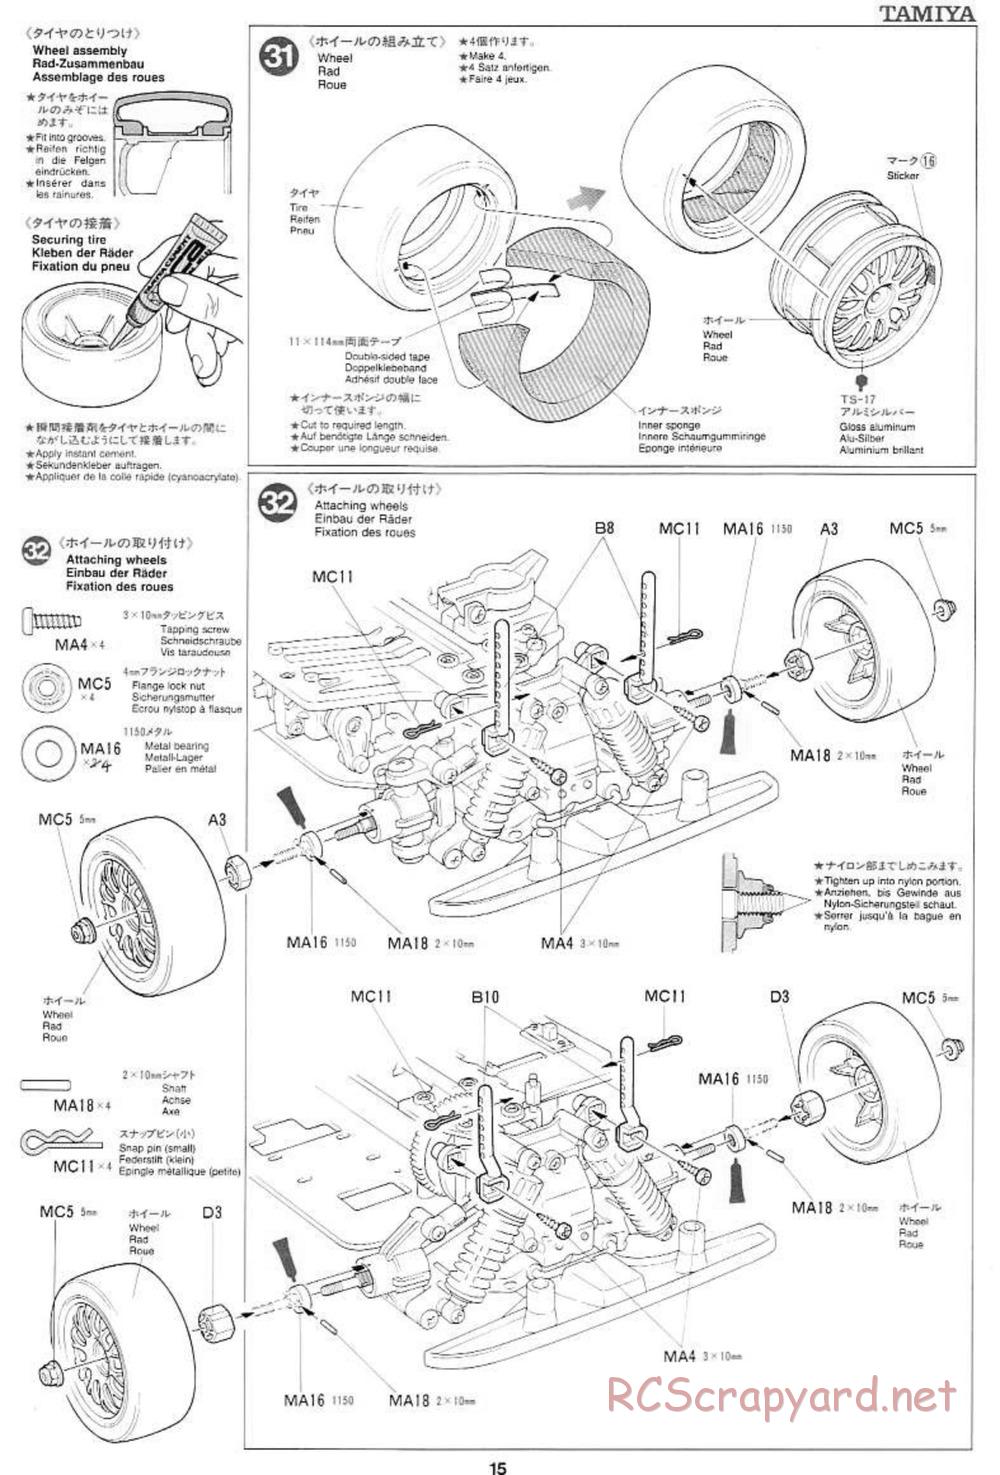 Tamiya - Mercedes CLK GTR Team Sportswear - TG10 Mk.1 Chassis - Manual - Page 15